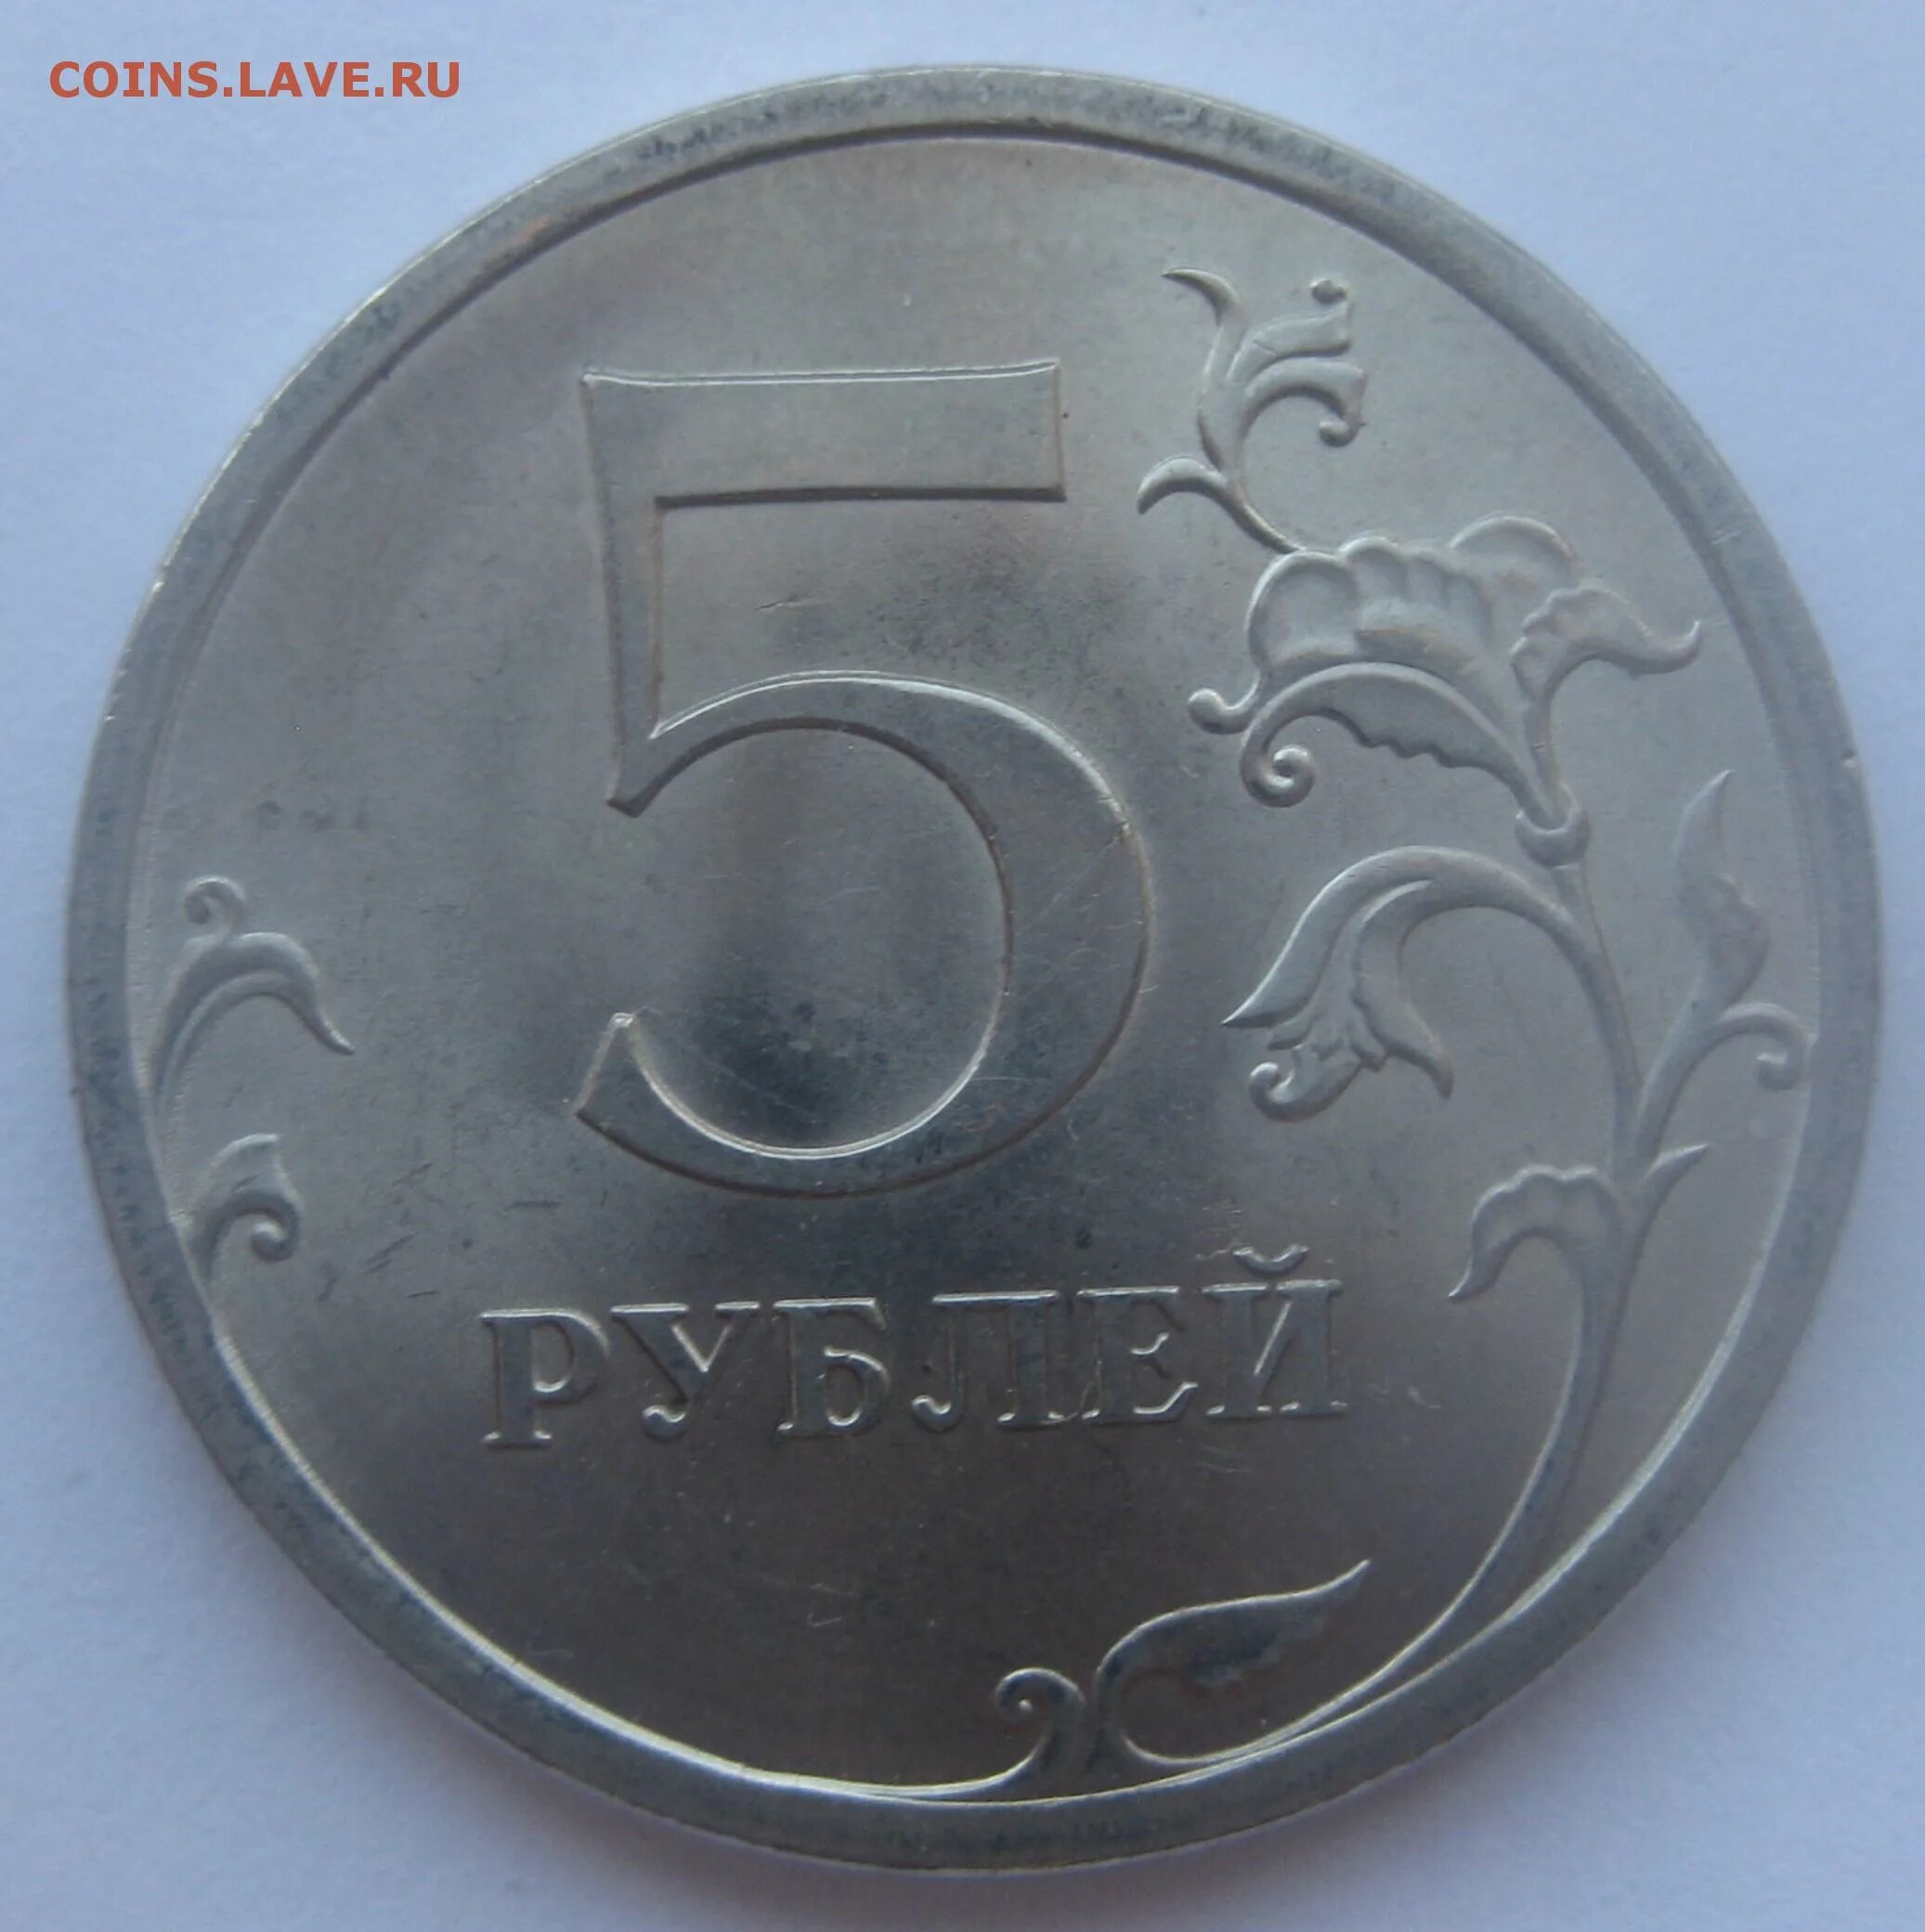 5 рублей недорого. 5 Рублей 1998 брак. Дешевый рубль.